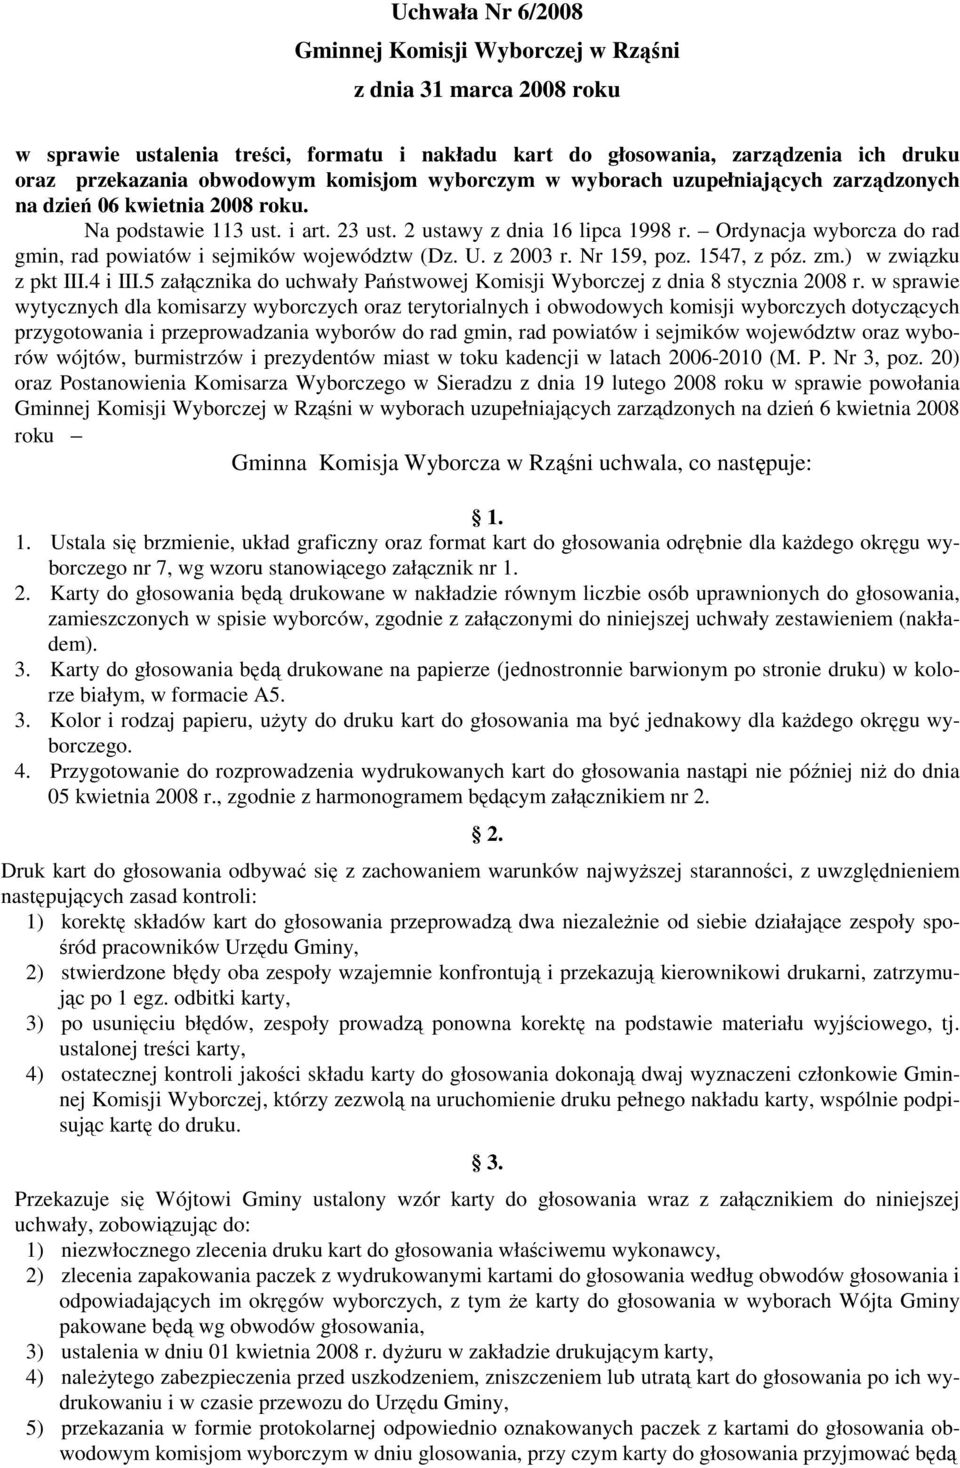 Ordynacja wyborcza do rad gmin, rad powiatów i sejmików województw (Dz. U. z 2003 r. Nr 159, poz. 1547, z póz. zm.) w związku z pkt III.4 i III.